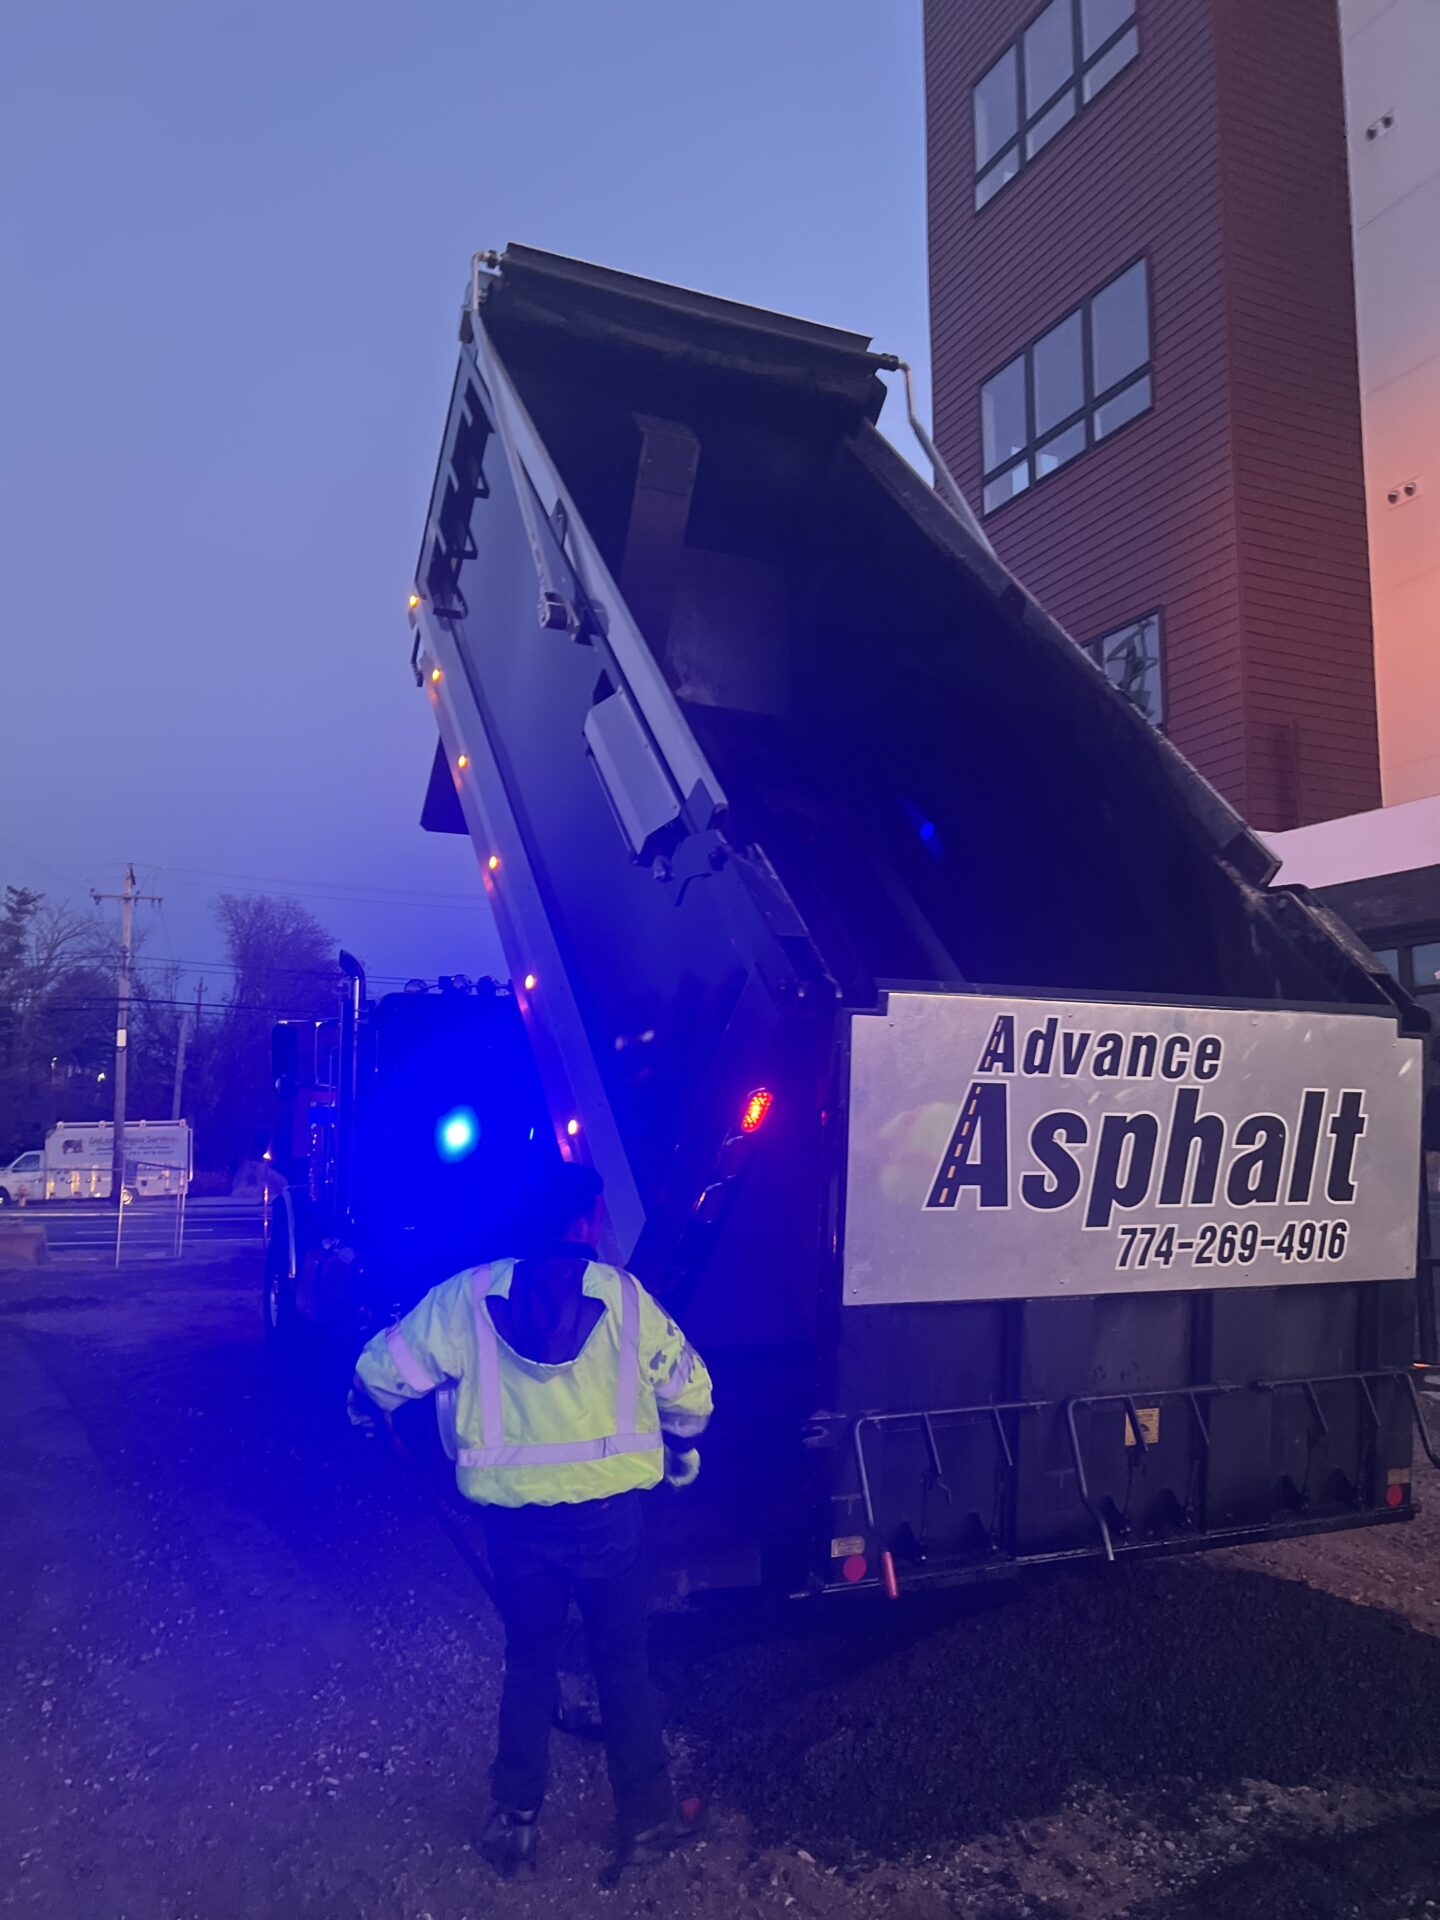 Advance Asphalt construction vehicle